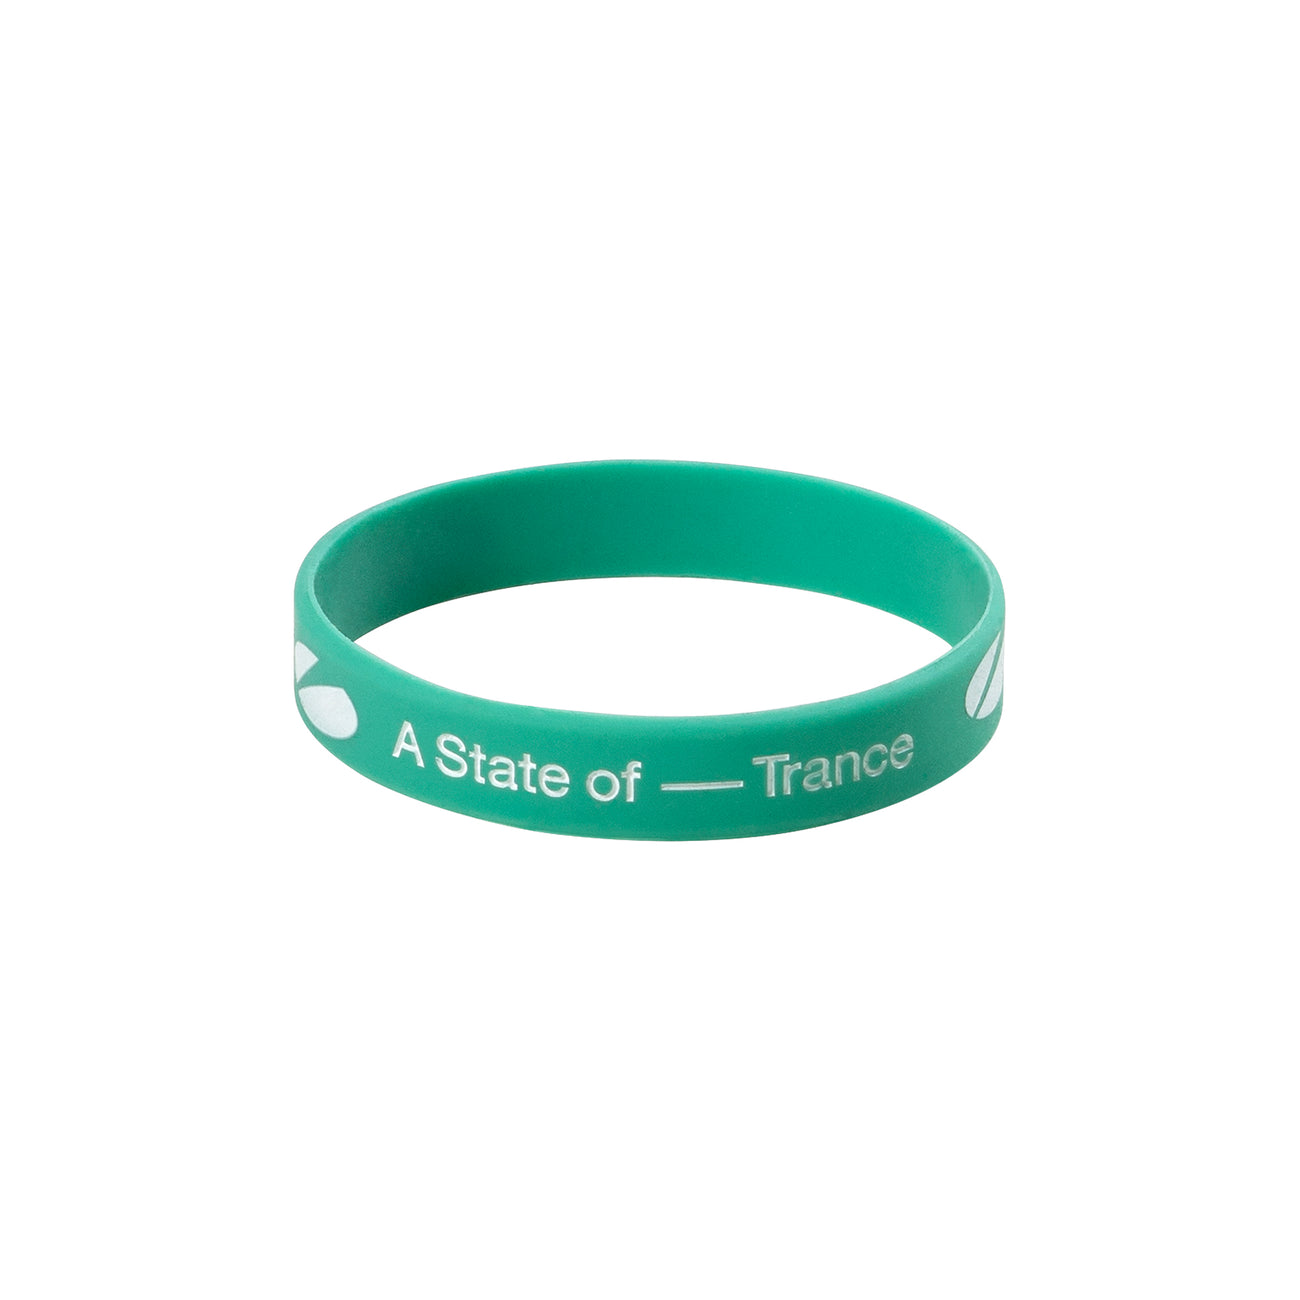 A State of Trance DESTINATION Bracelet